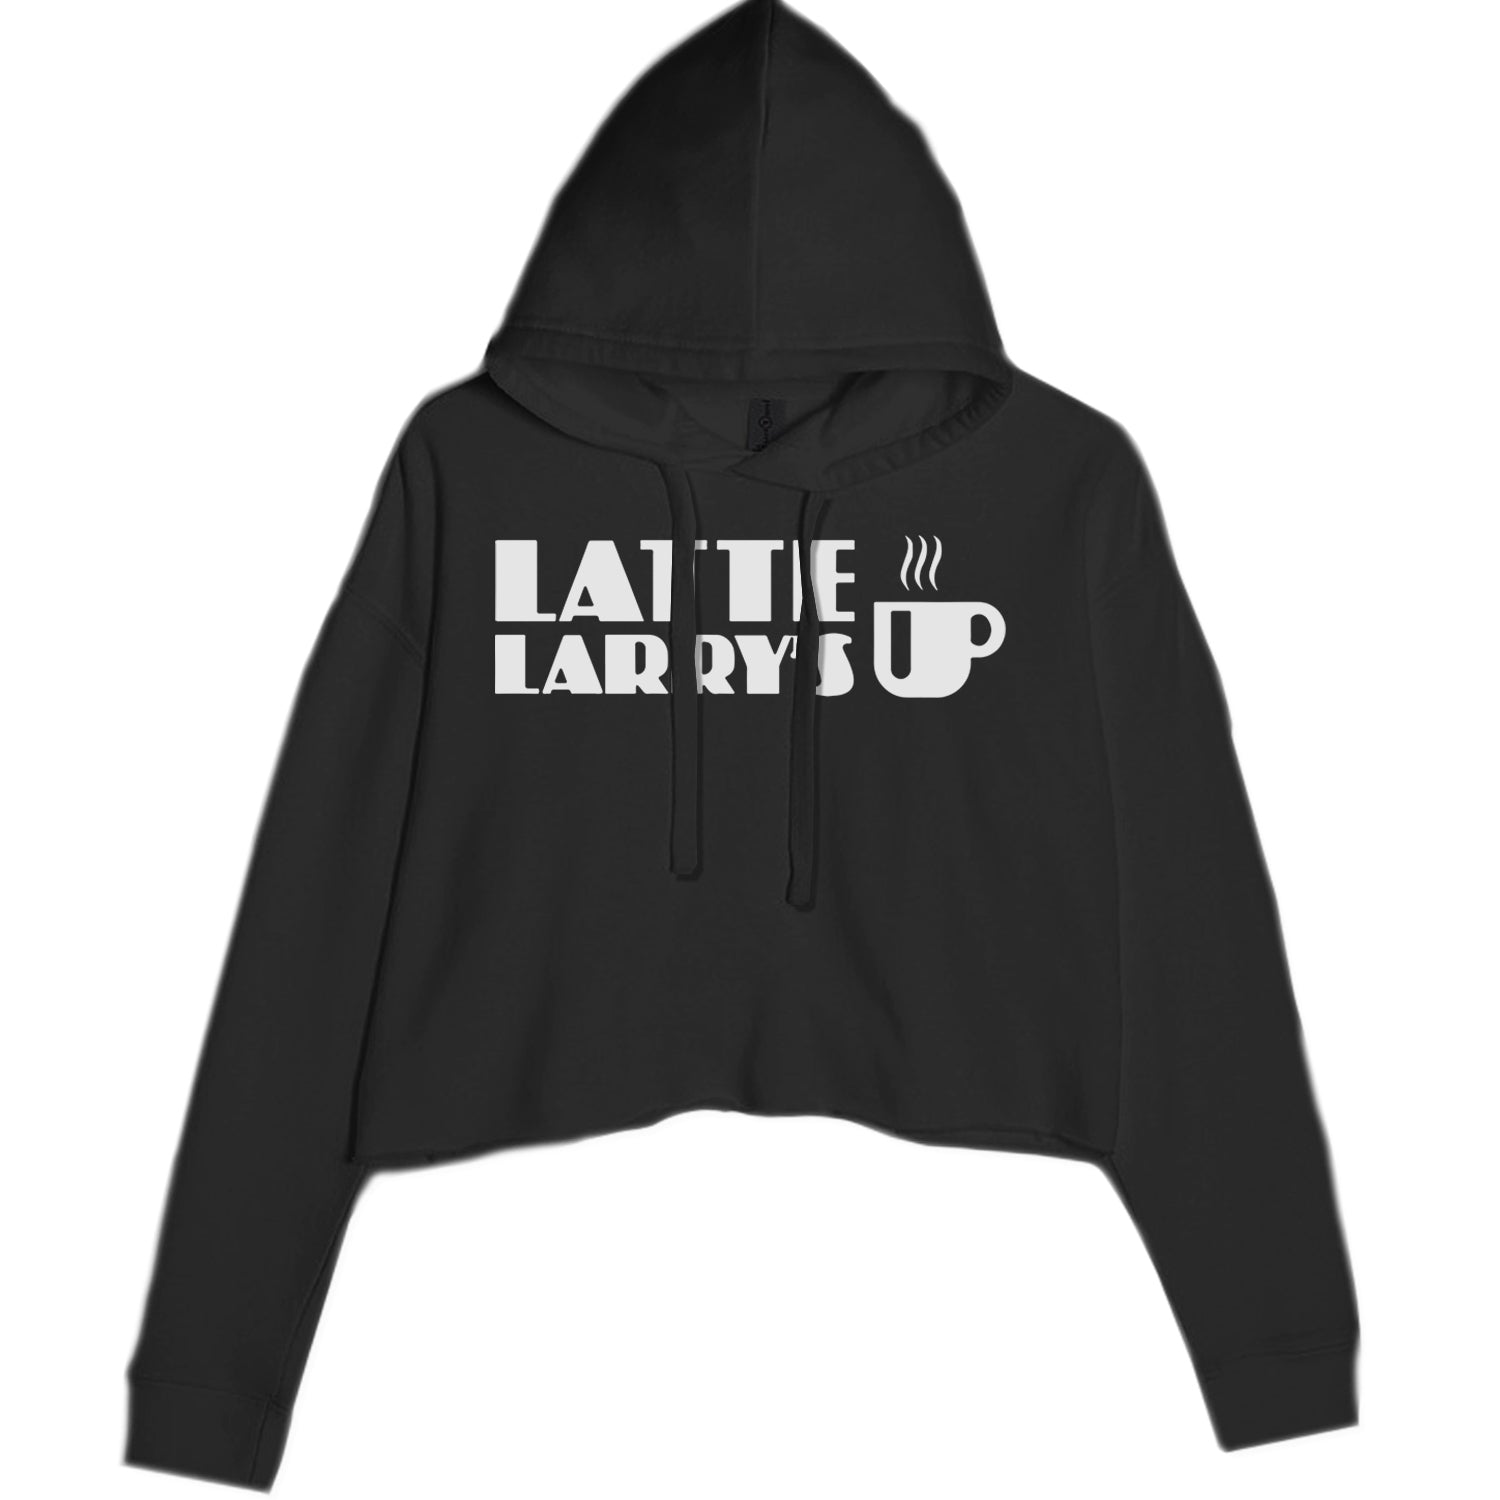 Latte Larry's Enthusiastic Coffee Cropped Hoodie Sweatshirt Black